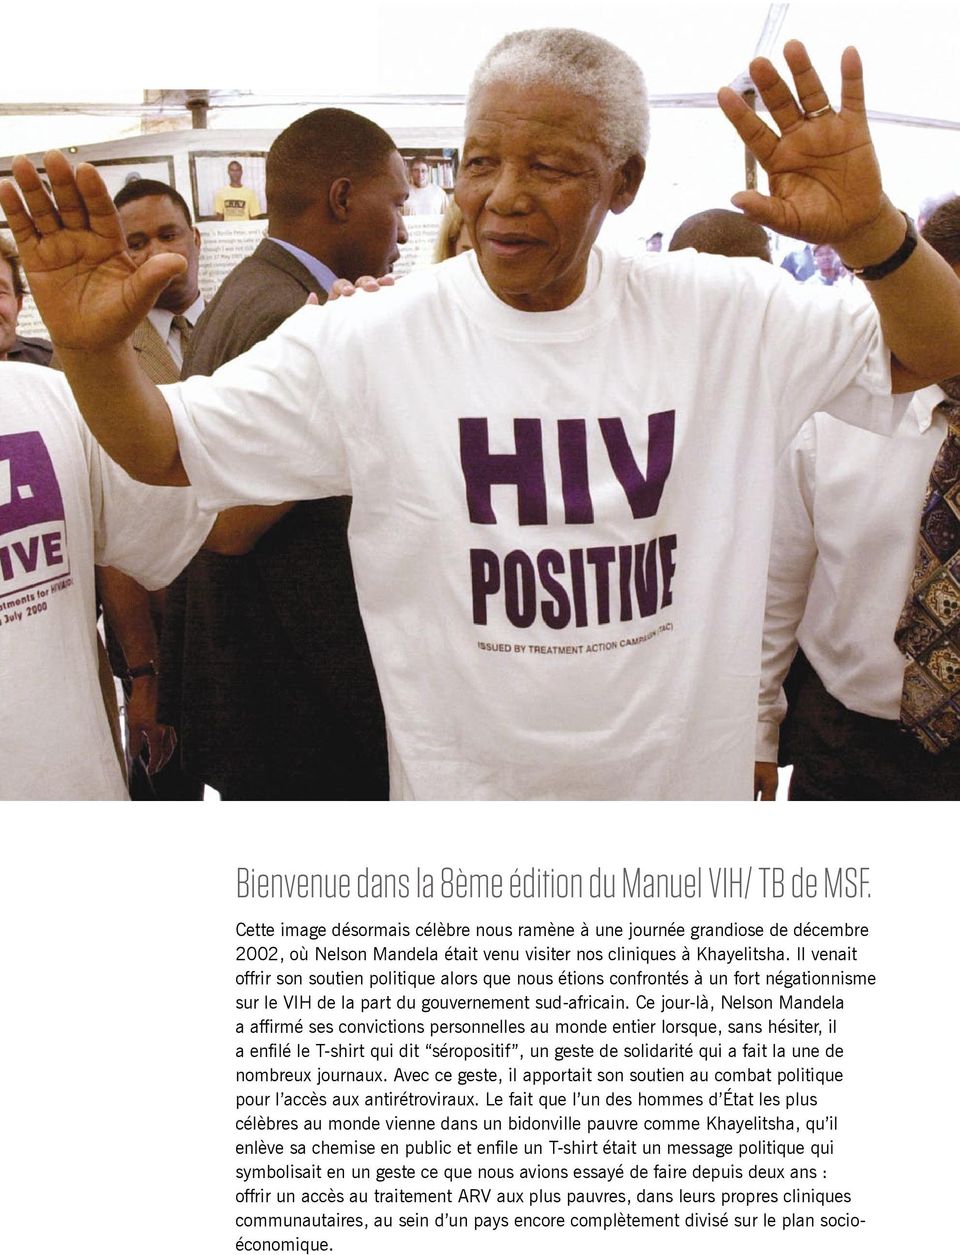 Il venait offrir son soutien politique alors que nous étions confrontés à un fort négationnisme sur le VIH de la part du gouvernement sud-africain.